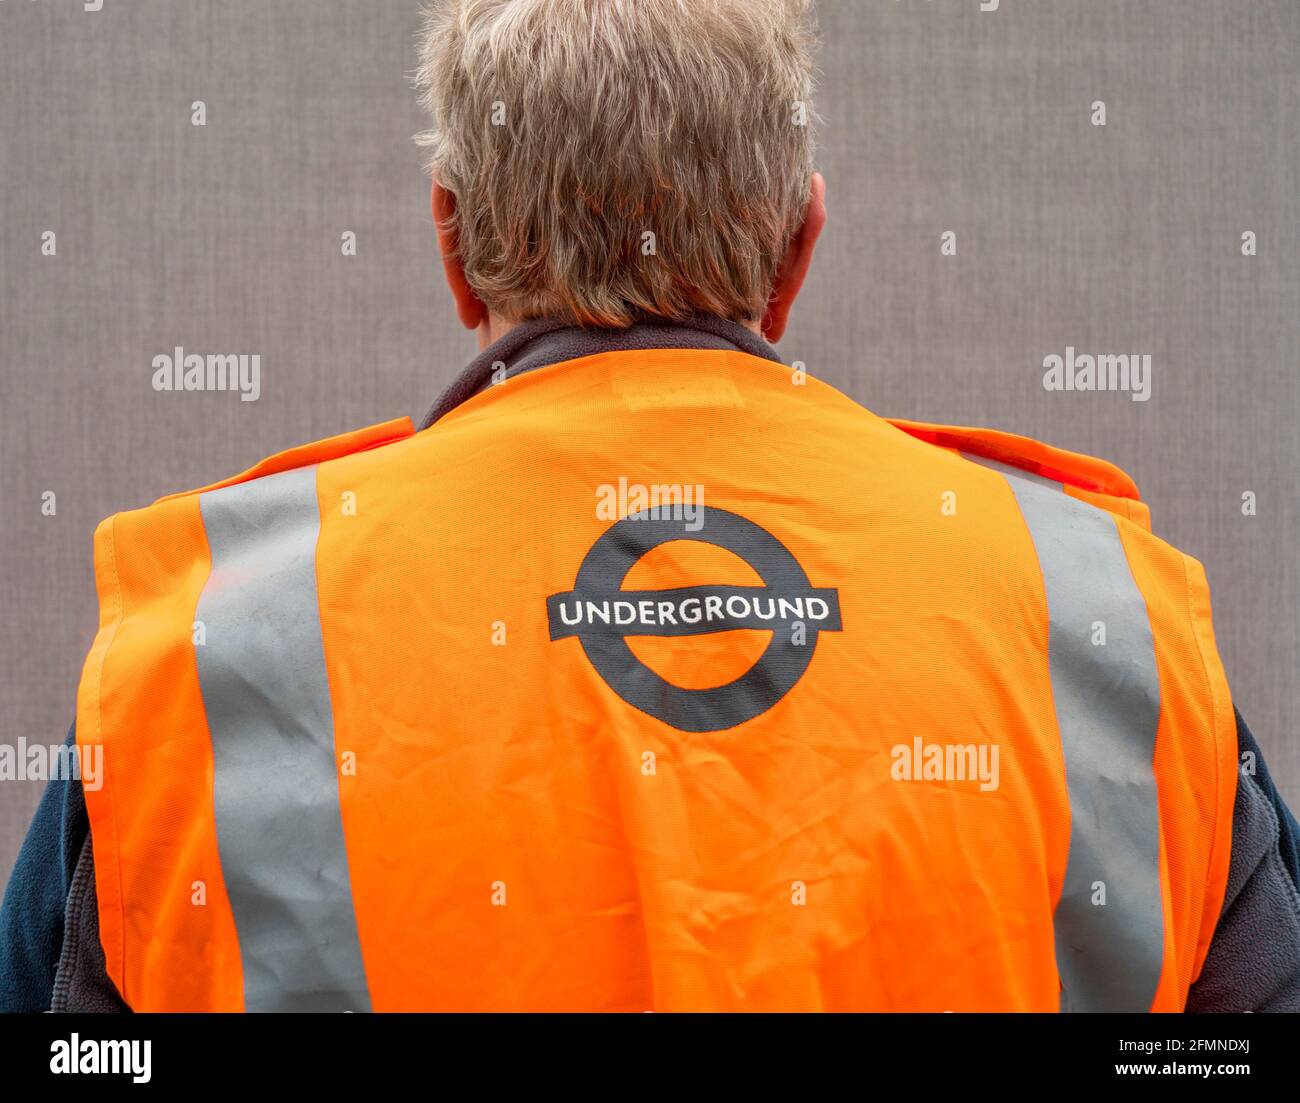 Tiro de pov cercano de la espalda de un hombre mayor, en el interior,  usando un chaleco de seguridad naranja London Underground hi viz Fotografía  de stock - Alamy